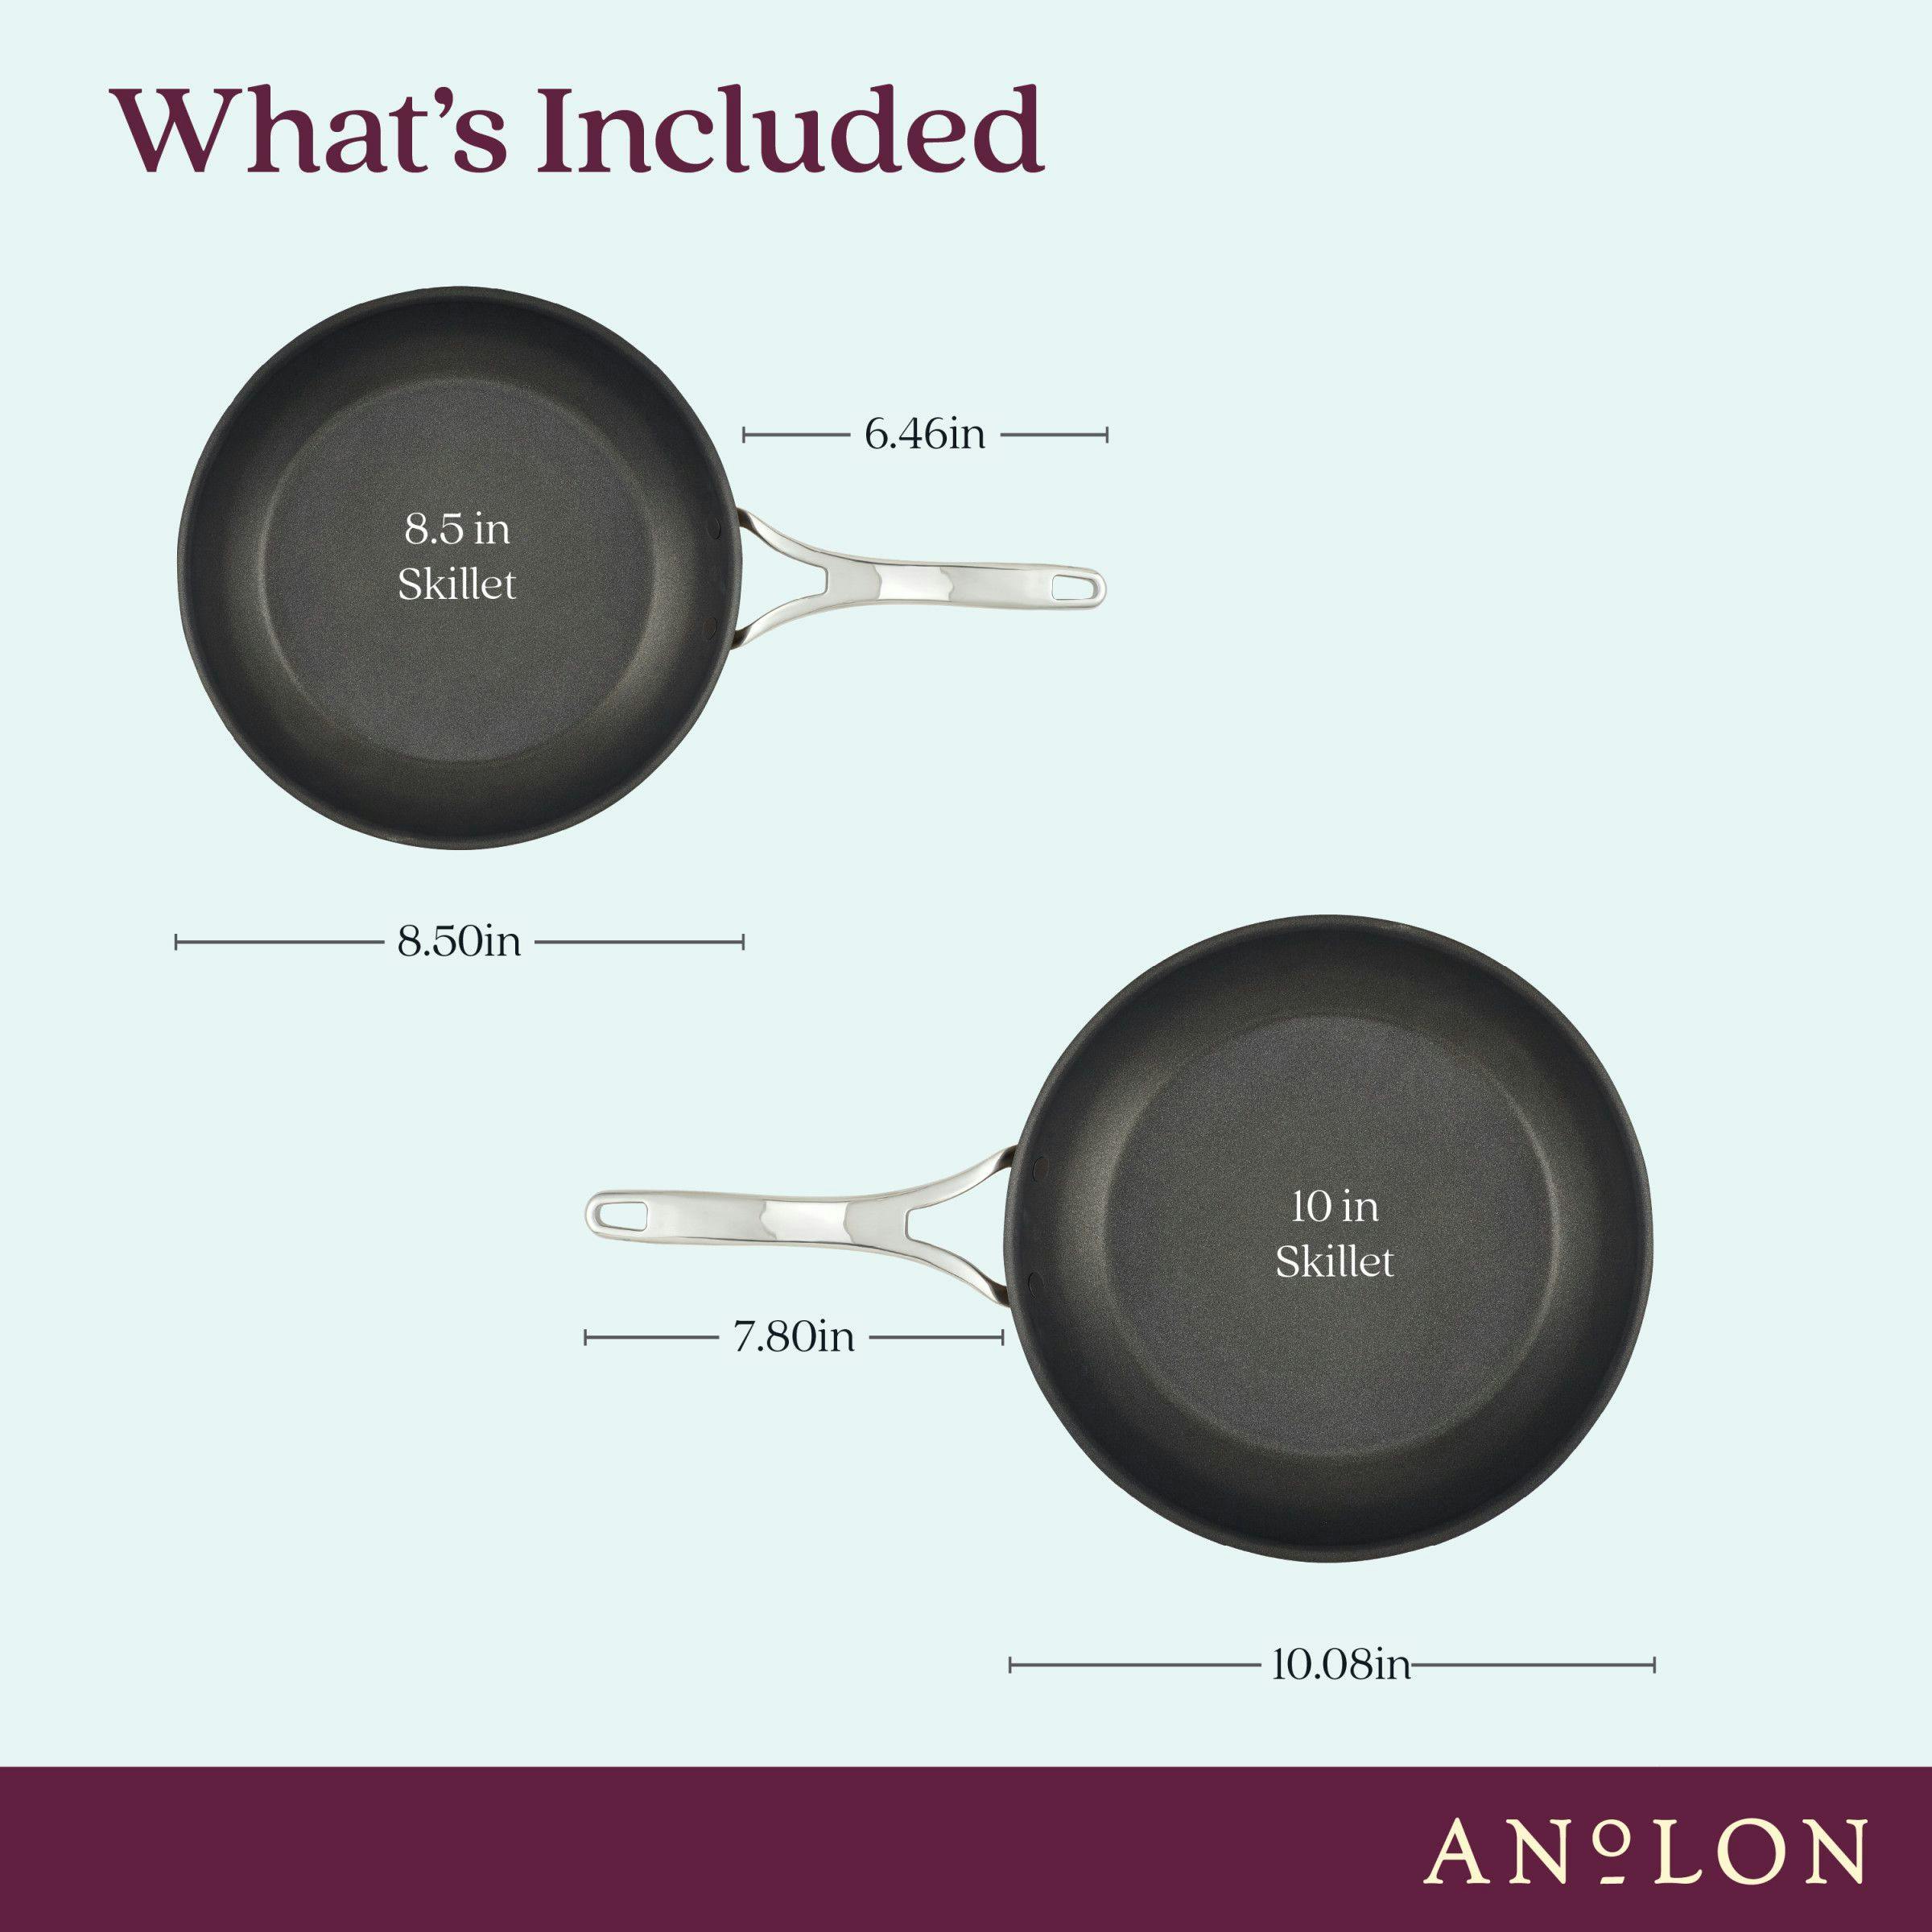 Anolon Nouvelle Copper Luxe Hard-Anodized Nonstick Frying Pan Set, 2-Piece